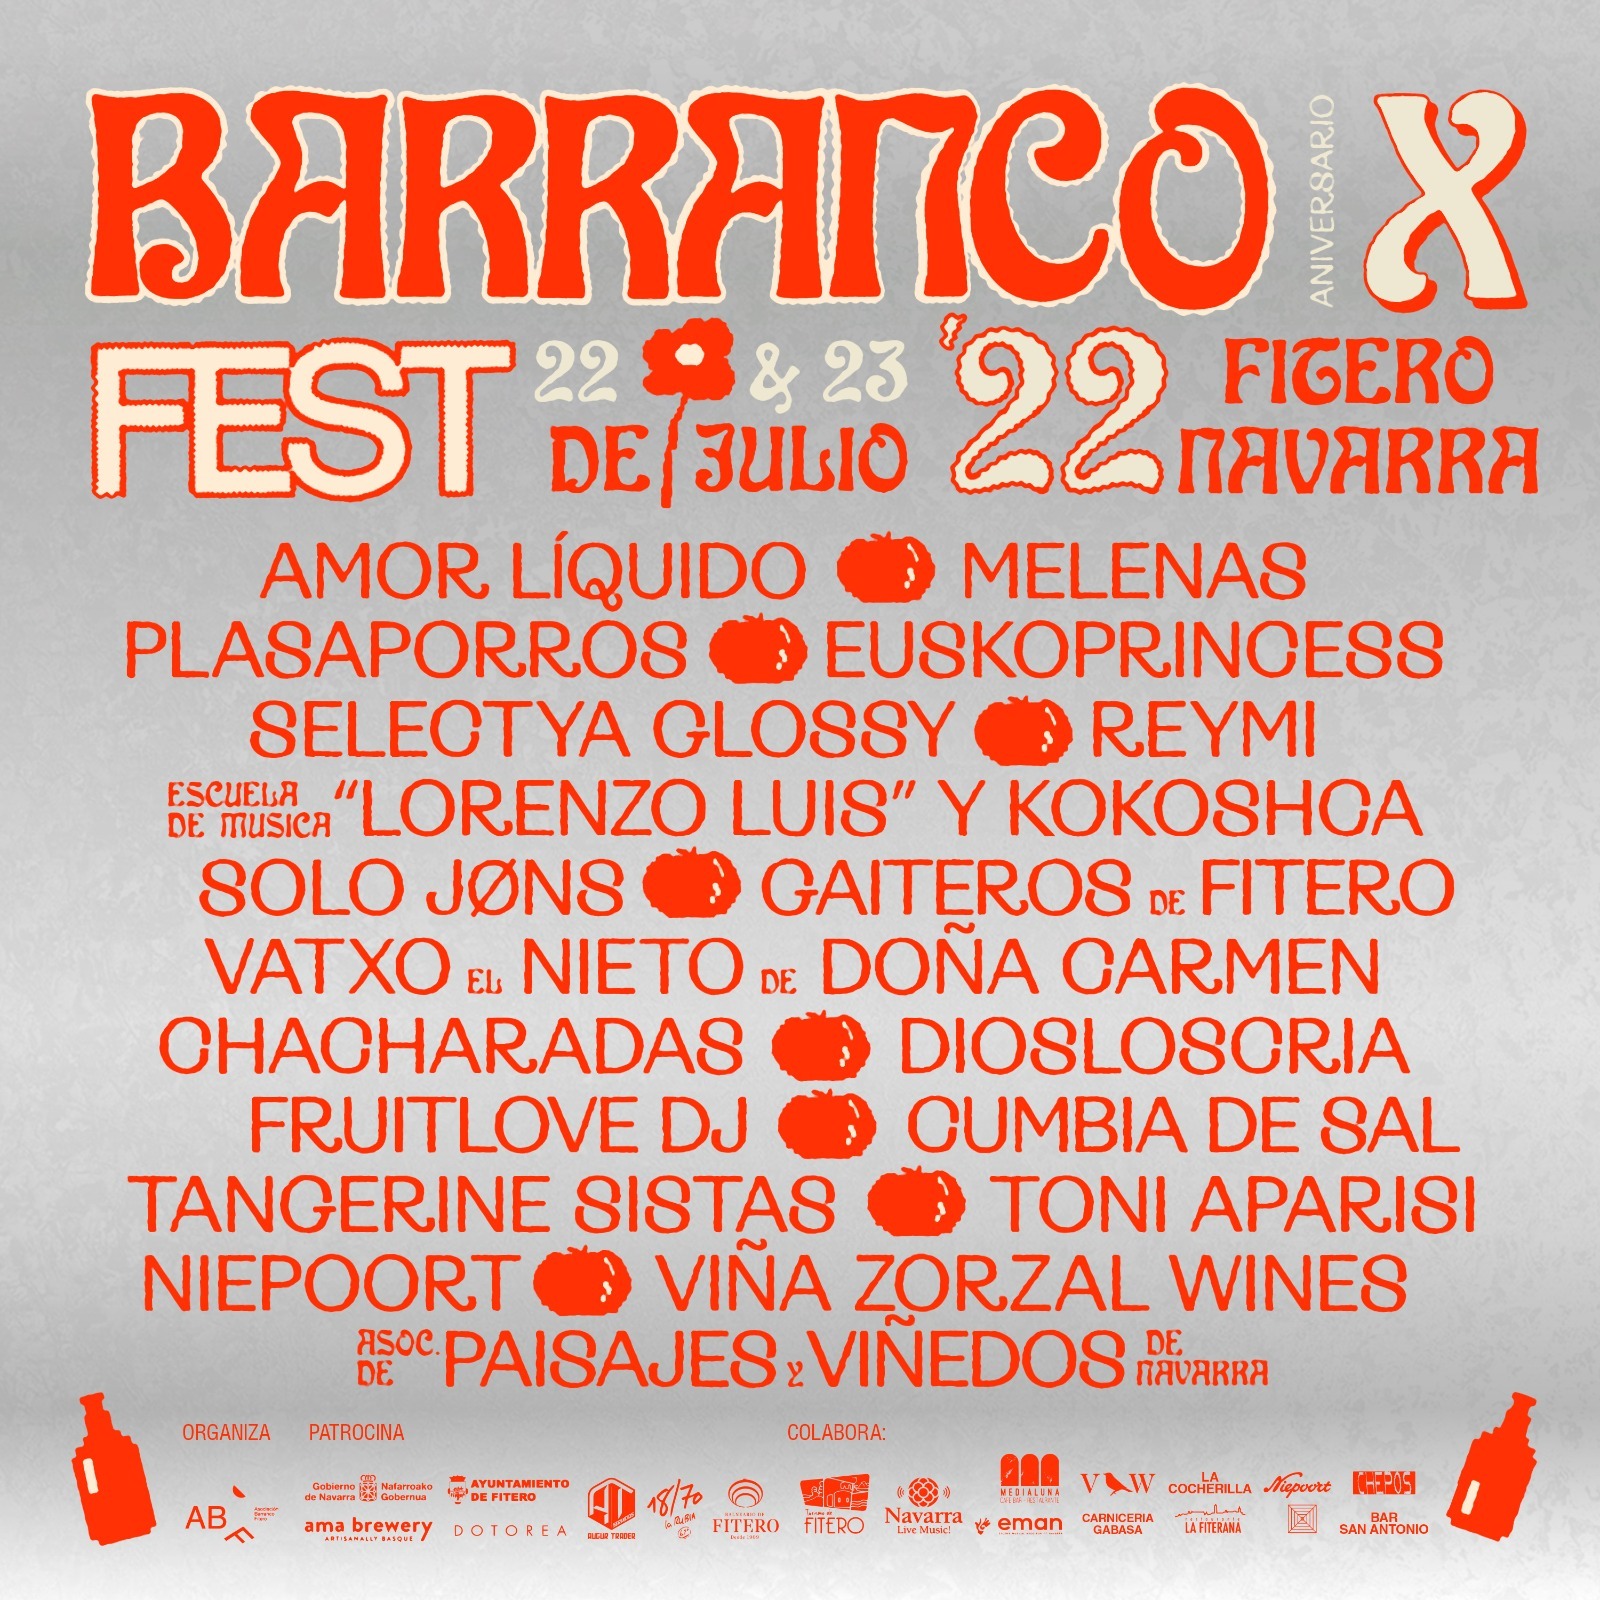 BARRANCO FEST 2022 en Fitero - Mutick